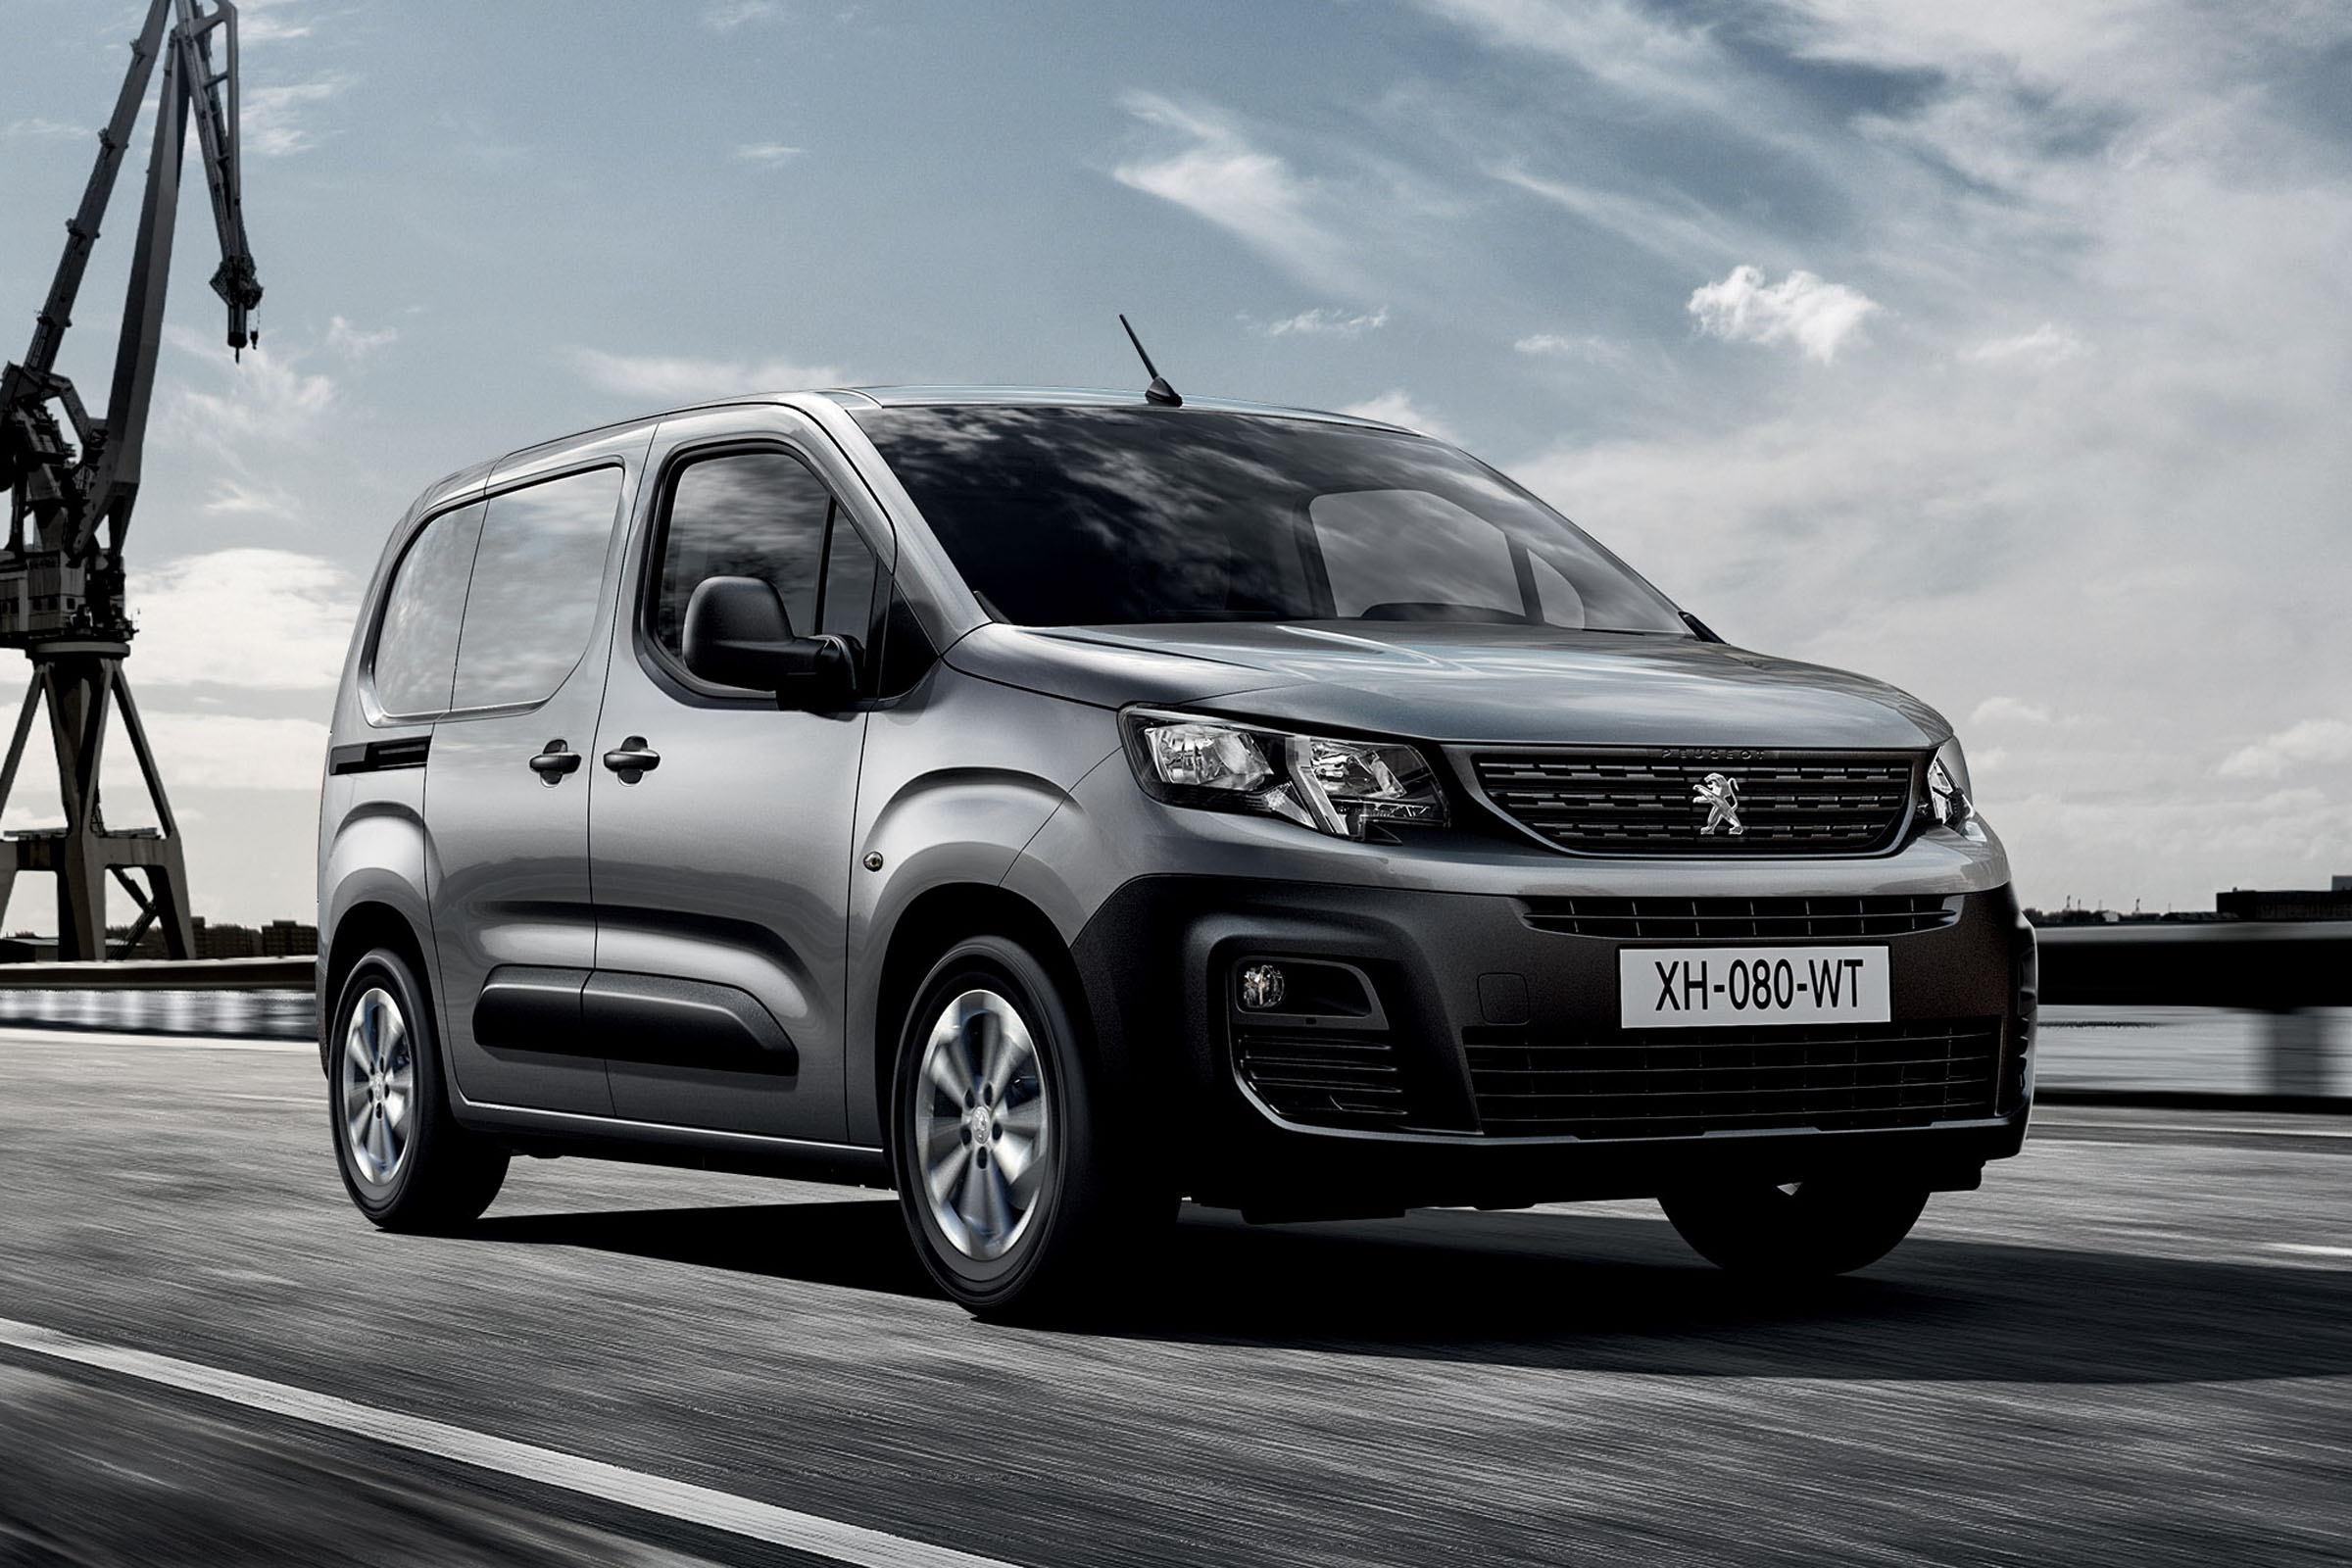 2018 Peugeot Partner van: specs and on-sale date | Carbuyer